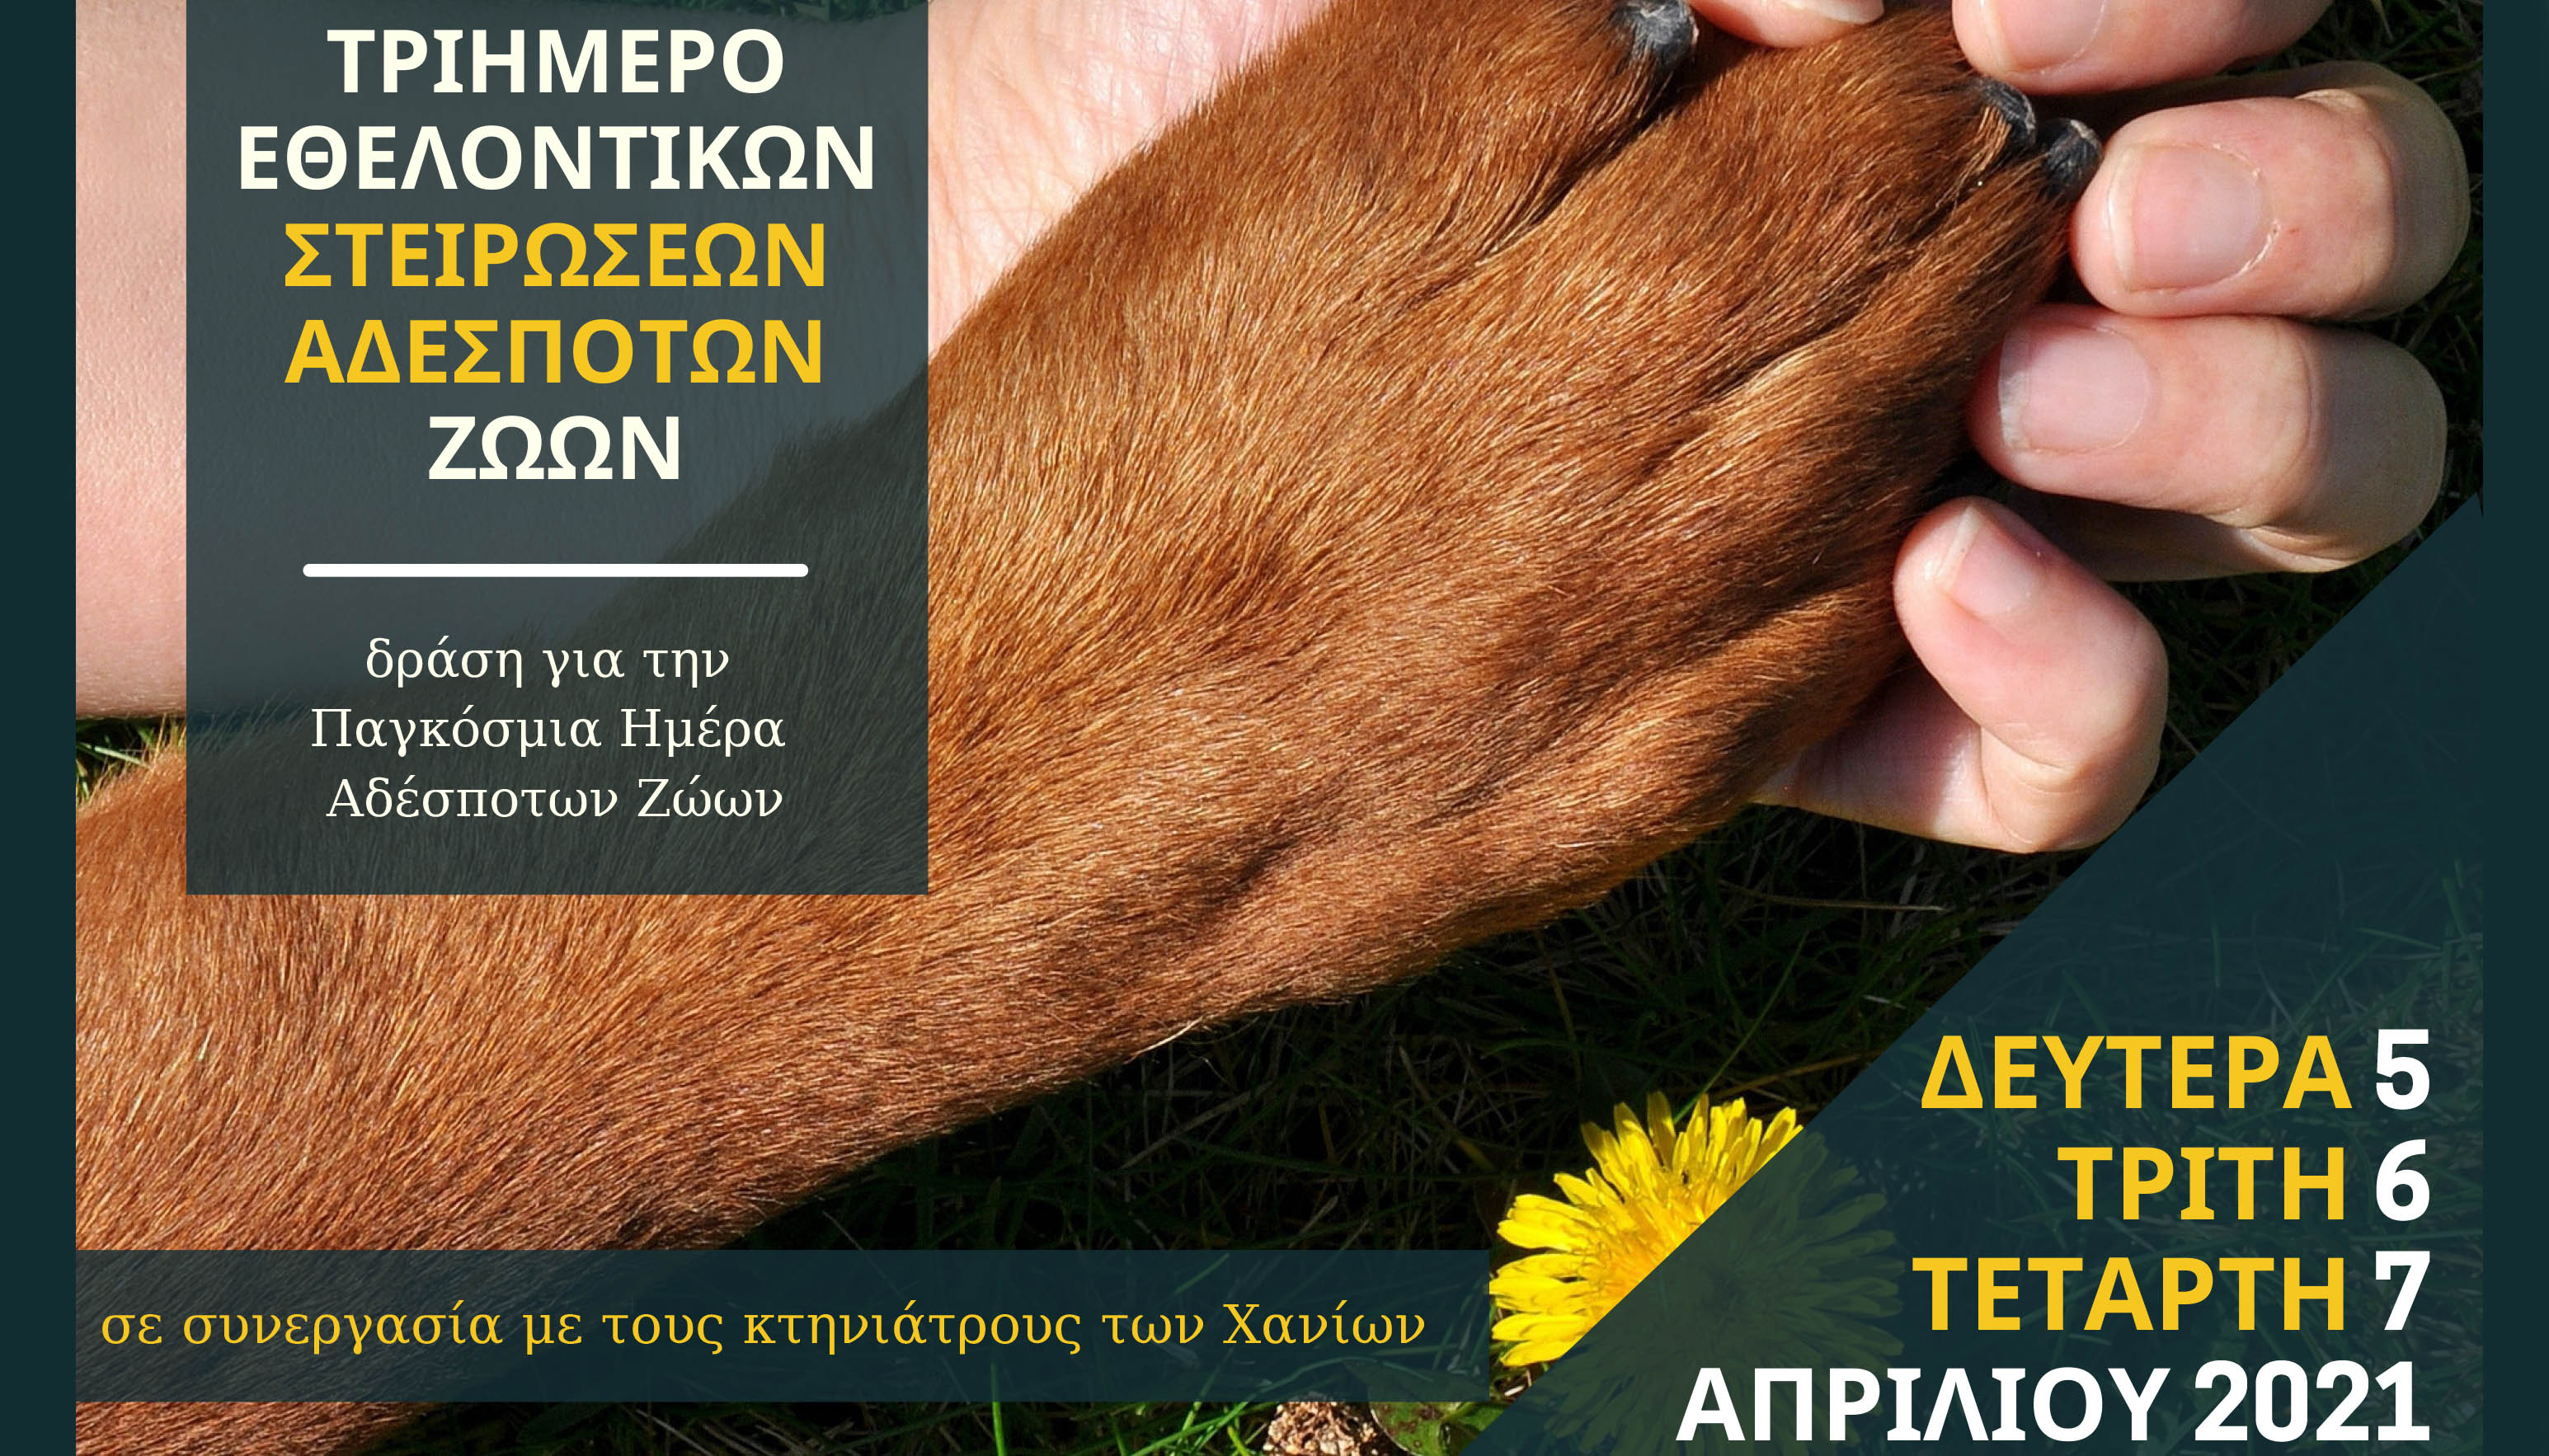 Τριήμερο εθελοντικών στειρώσεων σε αδέσποτα ζώα συντροφιάς από τον Δήμο Χανίων